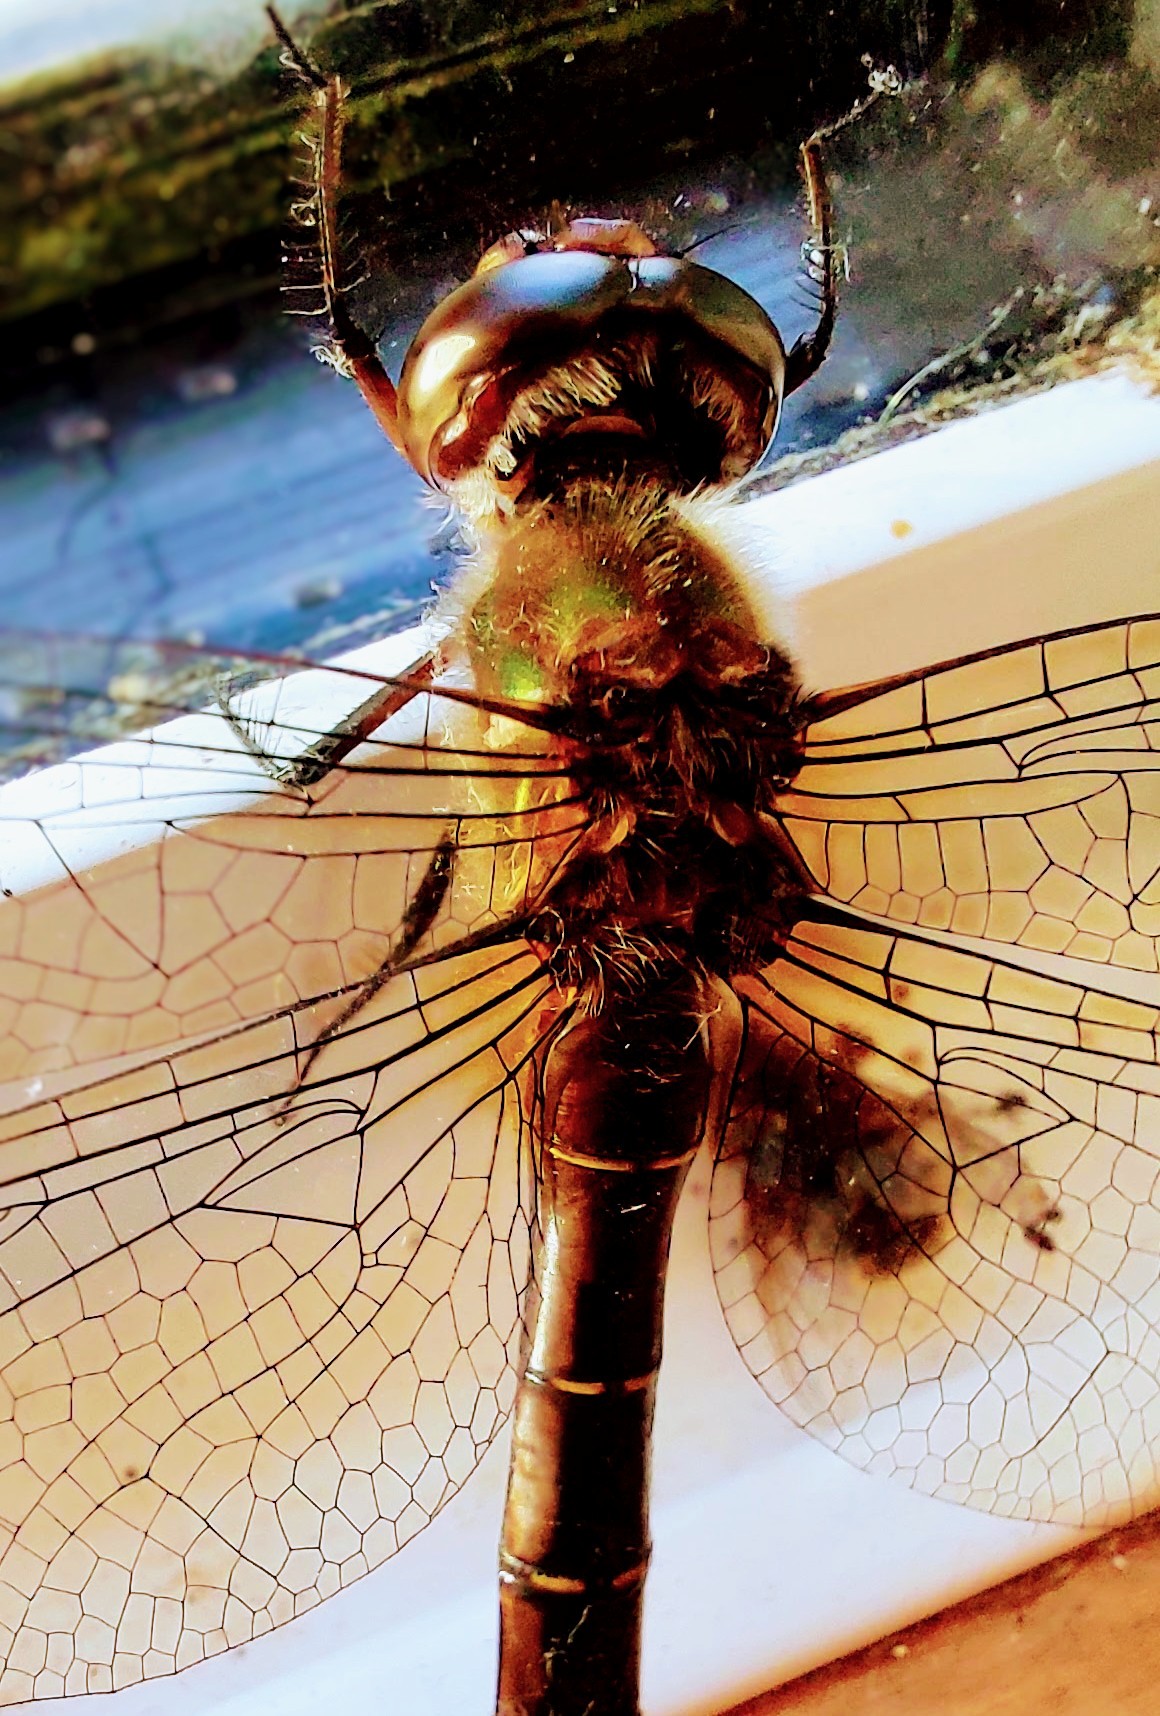 Dragonfly on a windowsill